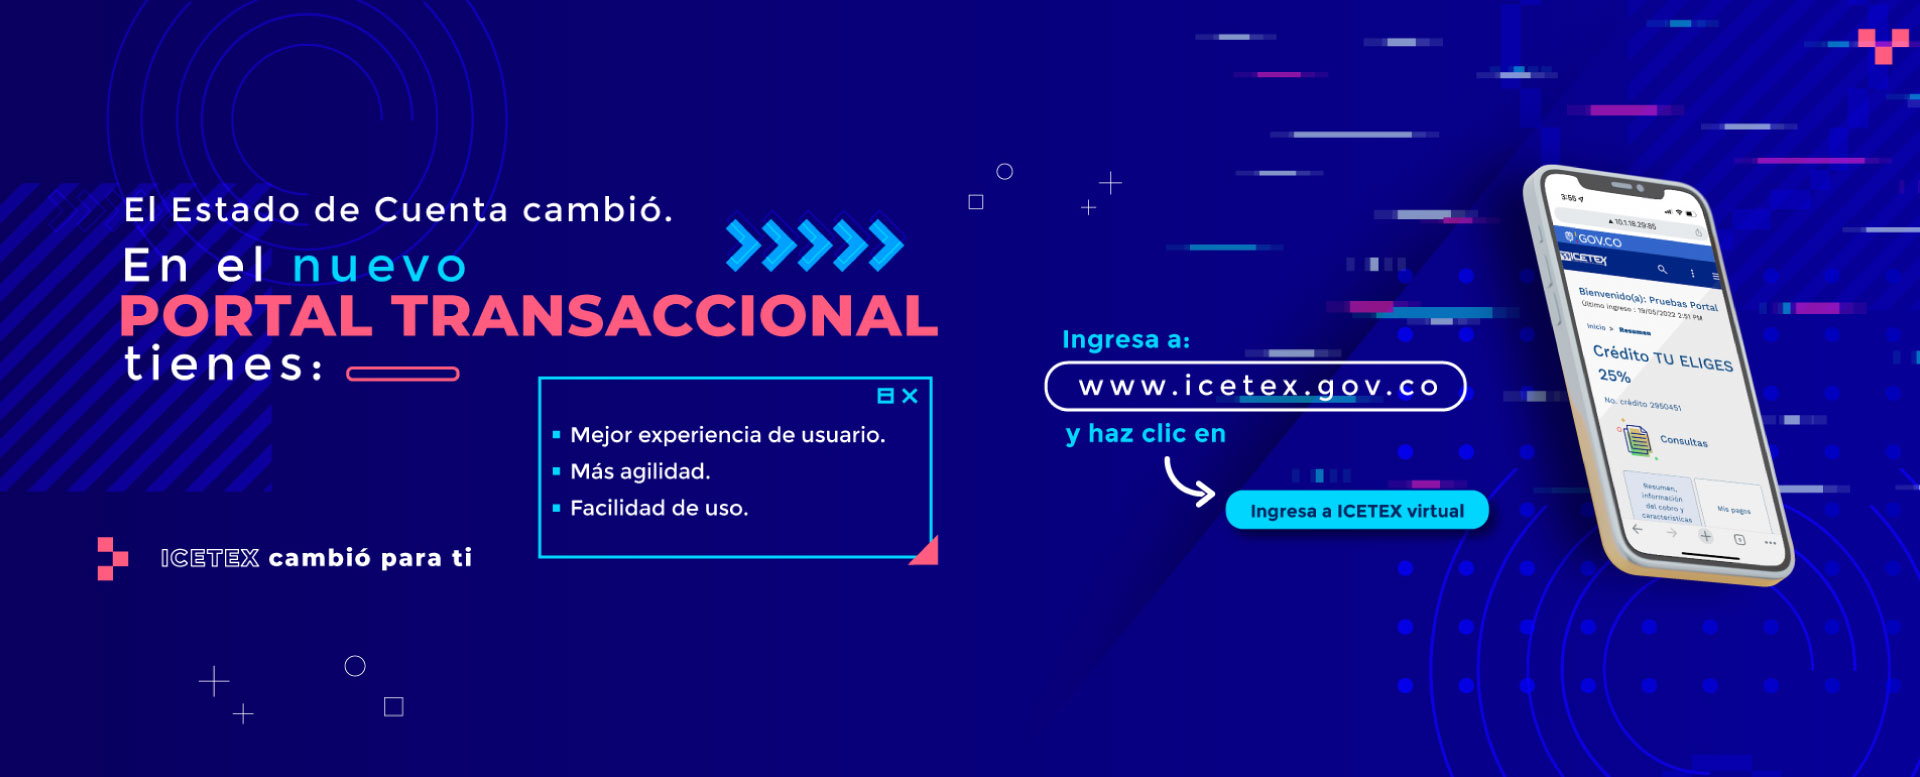 Ya llegó el nuevo Portal Transaccional de ICETEX. Ingresa a ICETEX virtual.